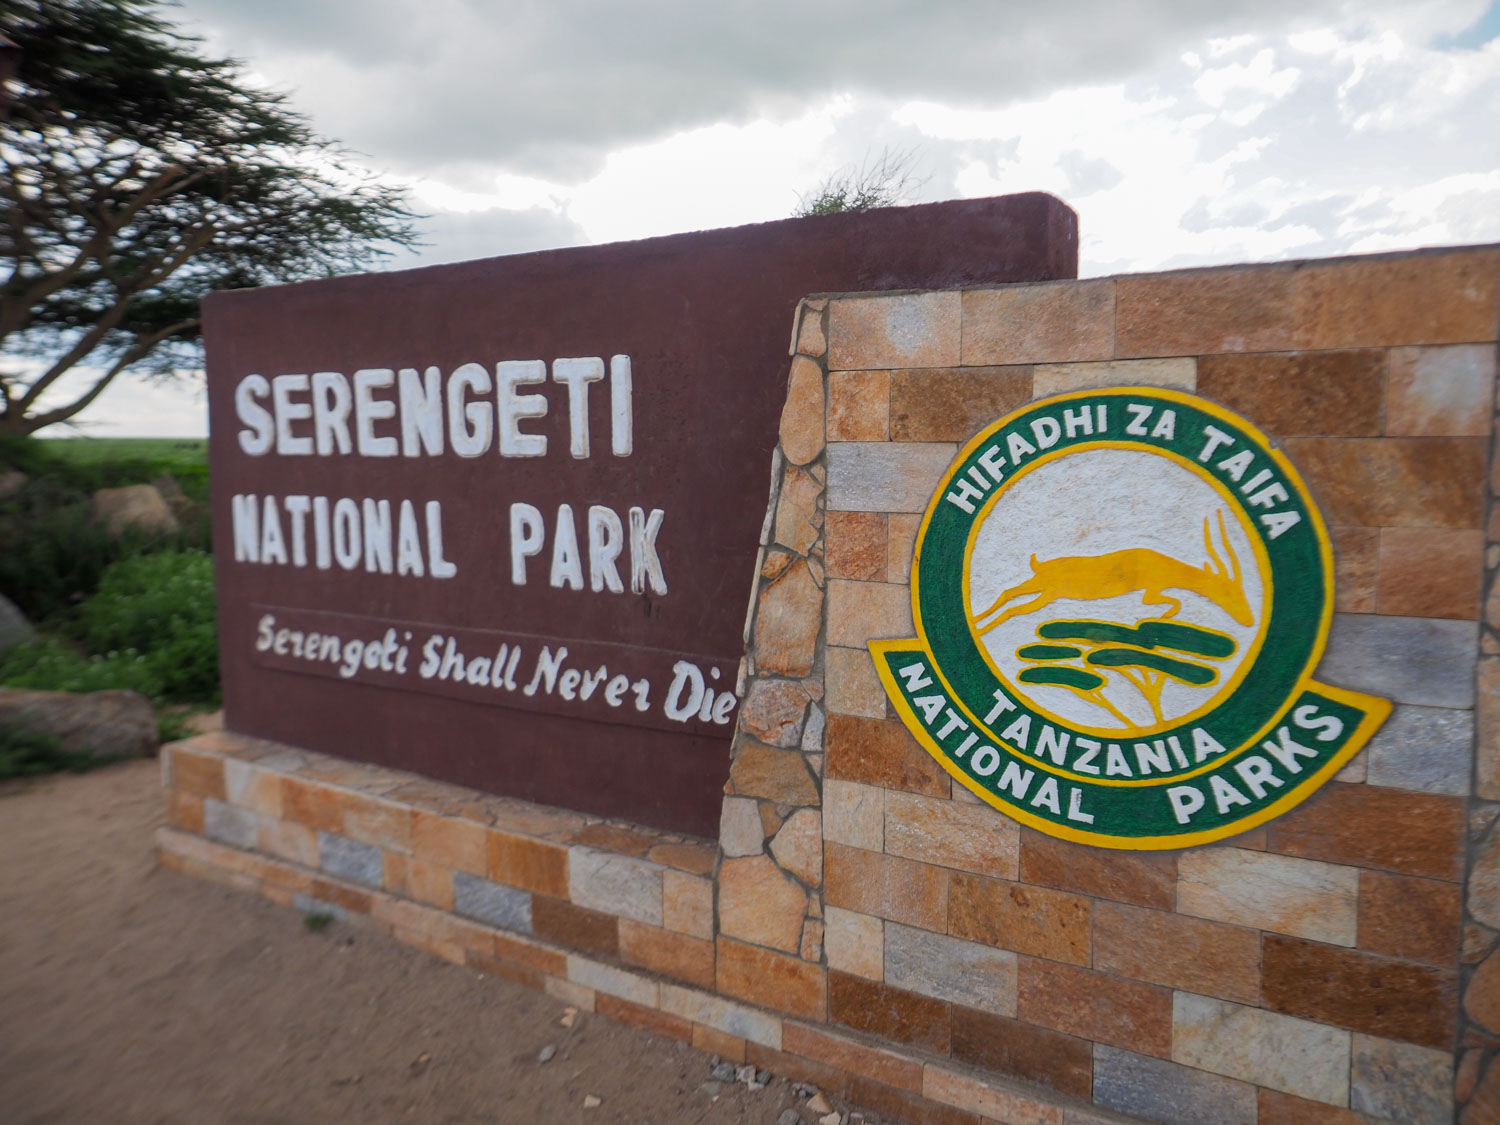 走りに走って、ようやくセレンゲティに到着。Serengeti shall never die, 『セレンゲティは滅びず』です。